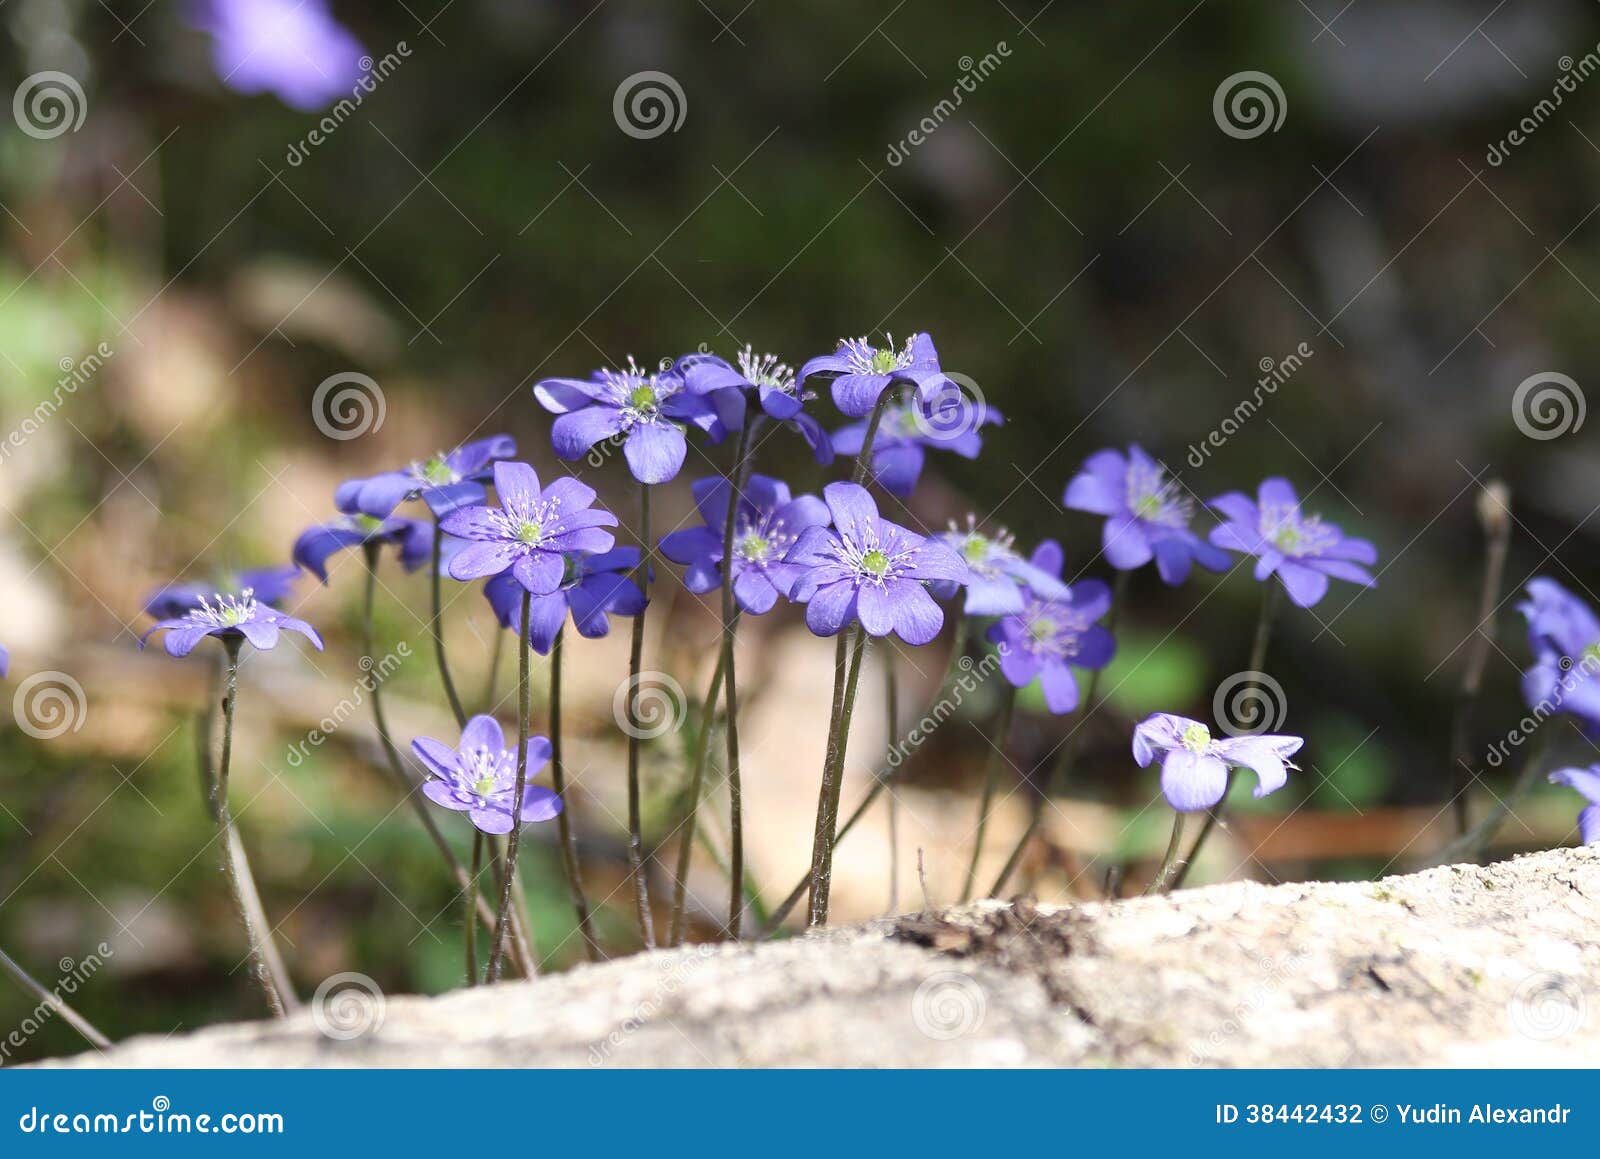 Fleurs violettes de forêt photo stock. Image du herbes - 38442432